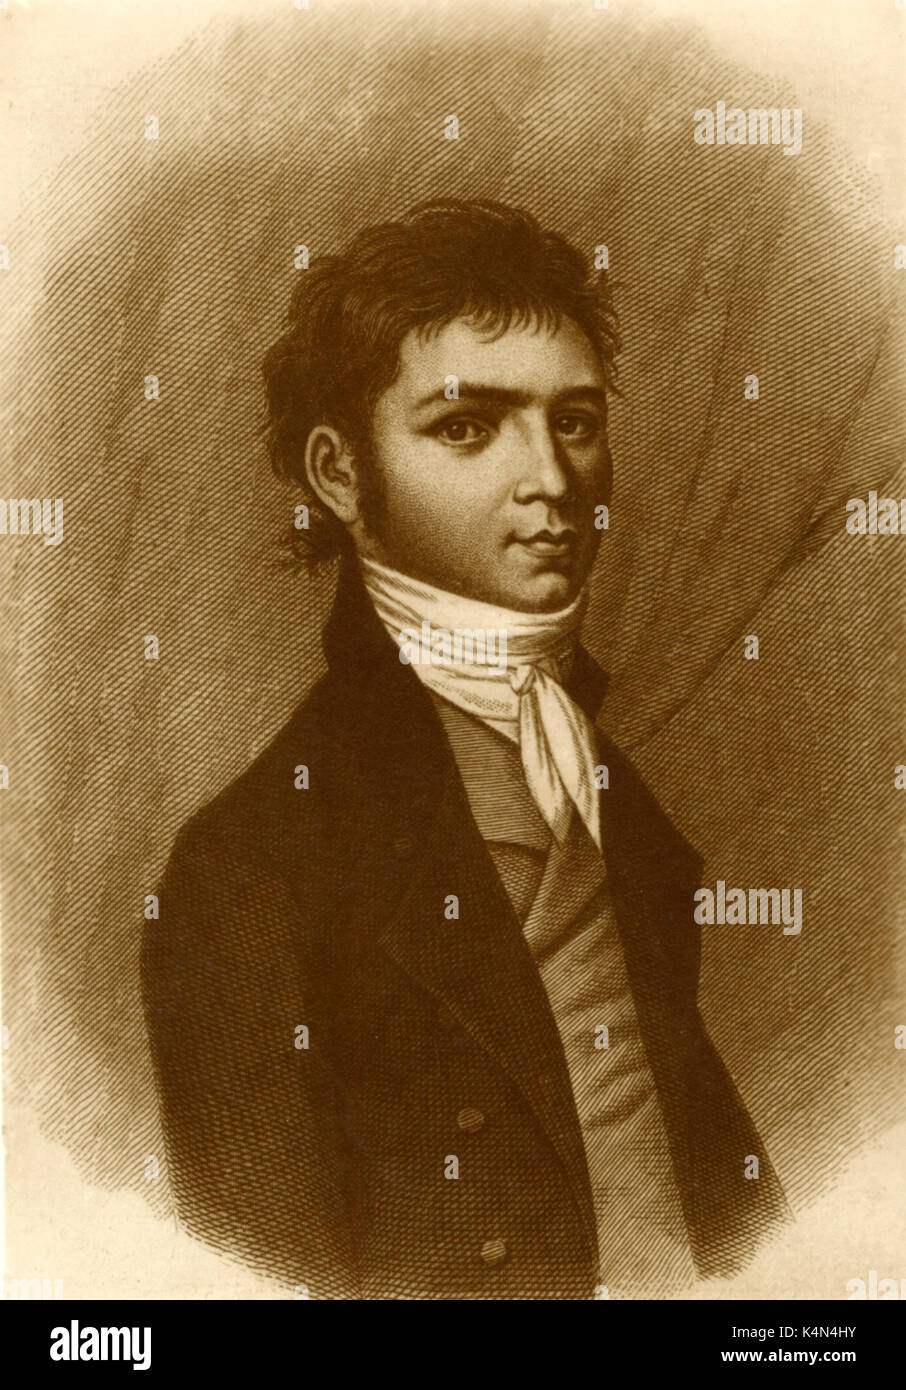 BEETHOVEN, Ludwig van - comme un jeune homme compositeur allemand 1770-1827 Banque D'Images